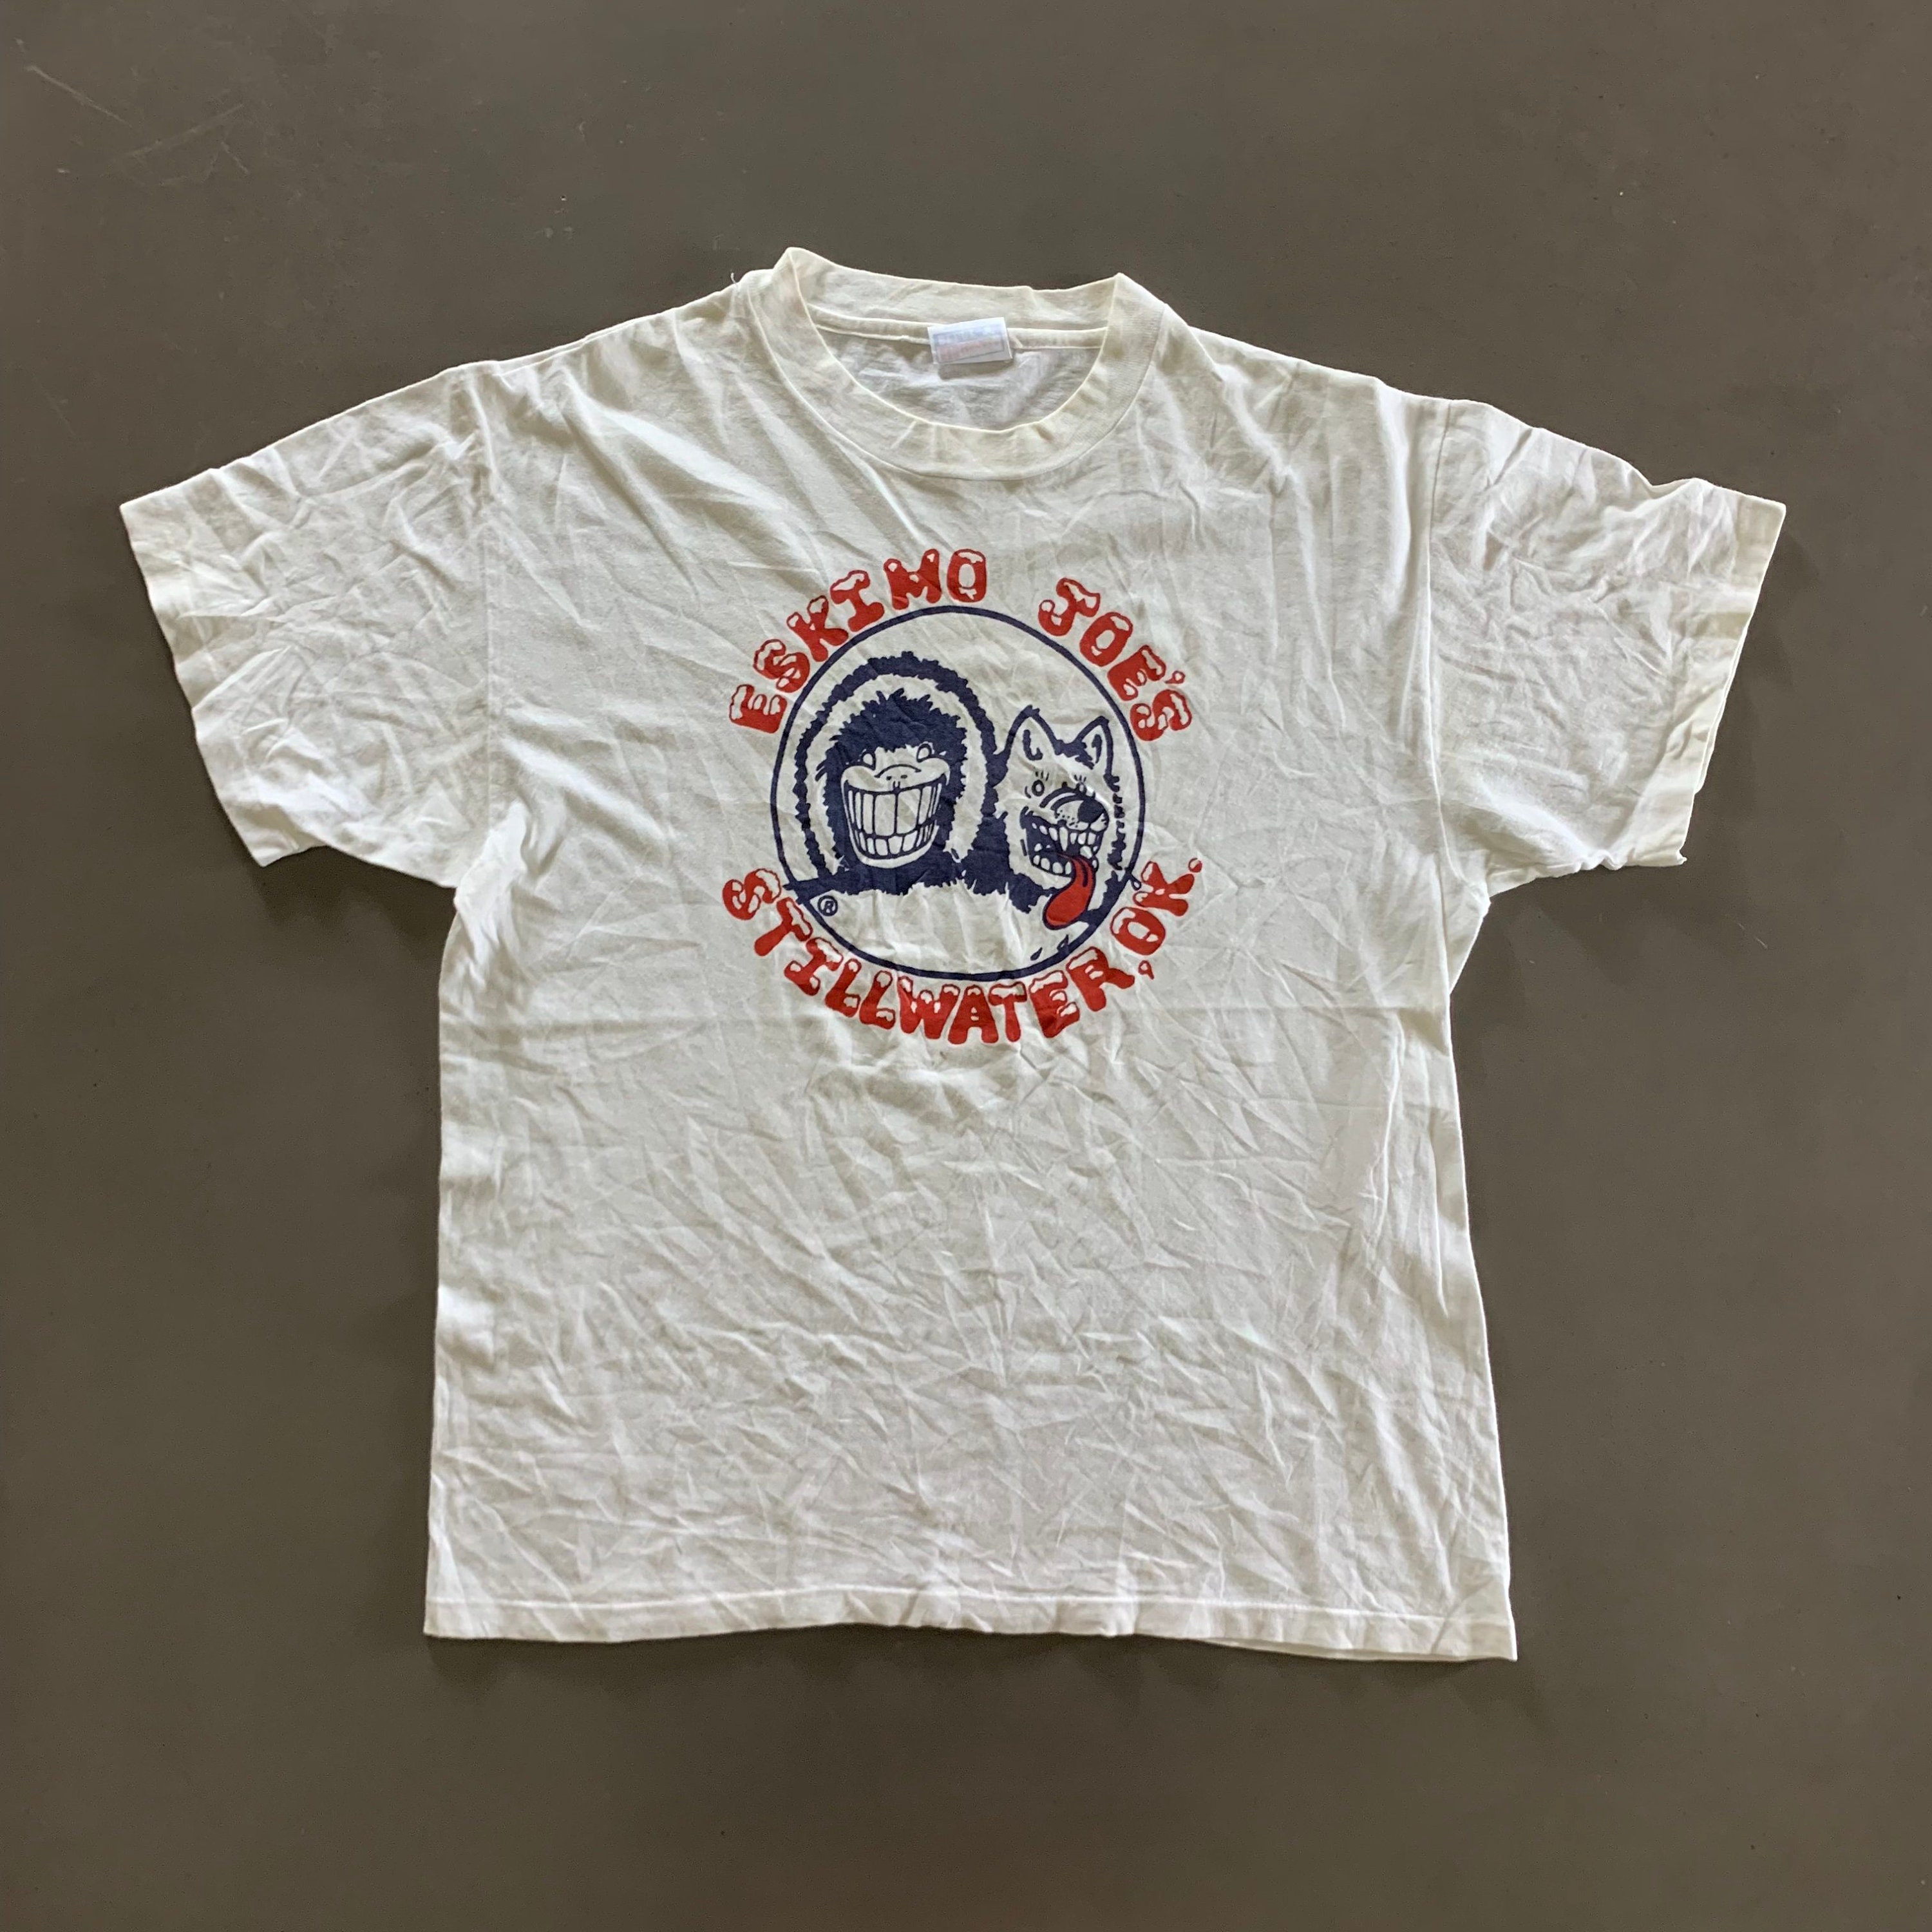 Vintage 1990s White Eskimo Joes T-shirt Size Large - Etsy UK